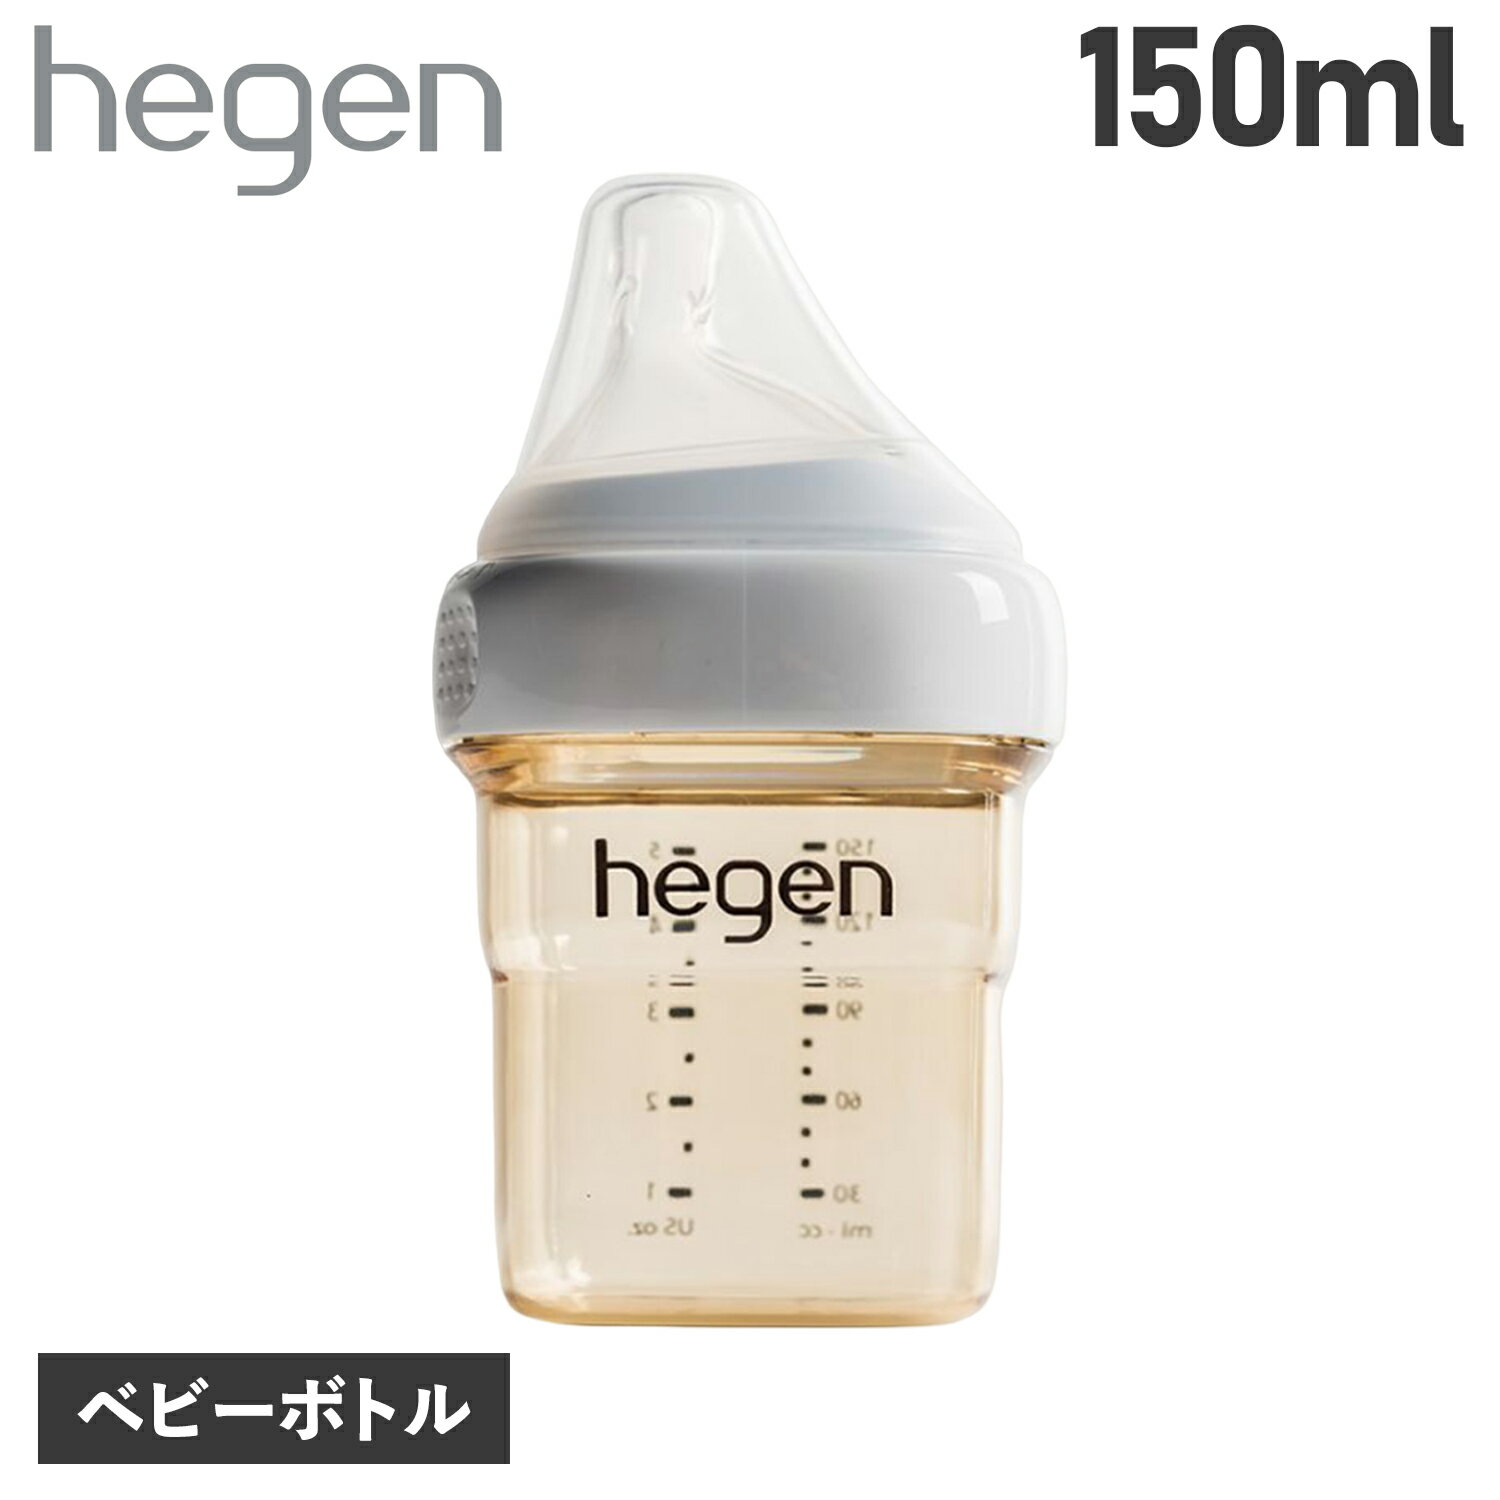  へーゲン hegen 哺乳瓶 ベビーボトル 150ml 新生児 ベビー PPSU 耐熱 広口 BABY BOTTLE 12152105